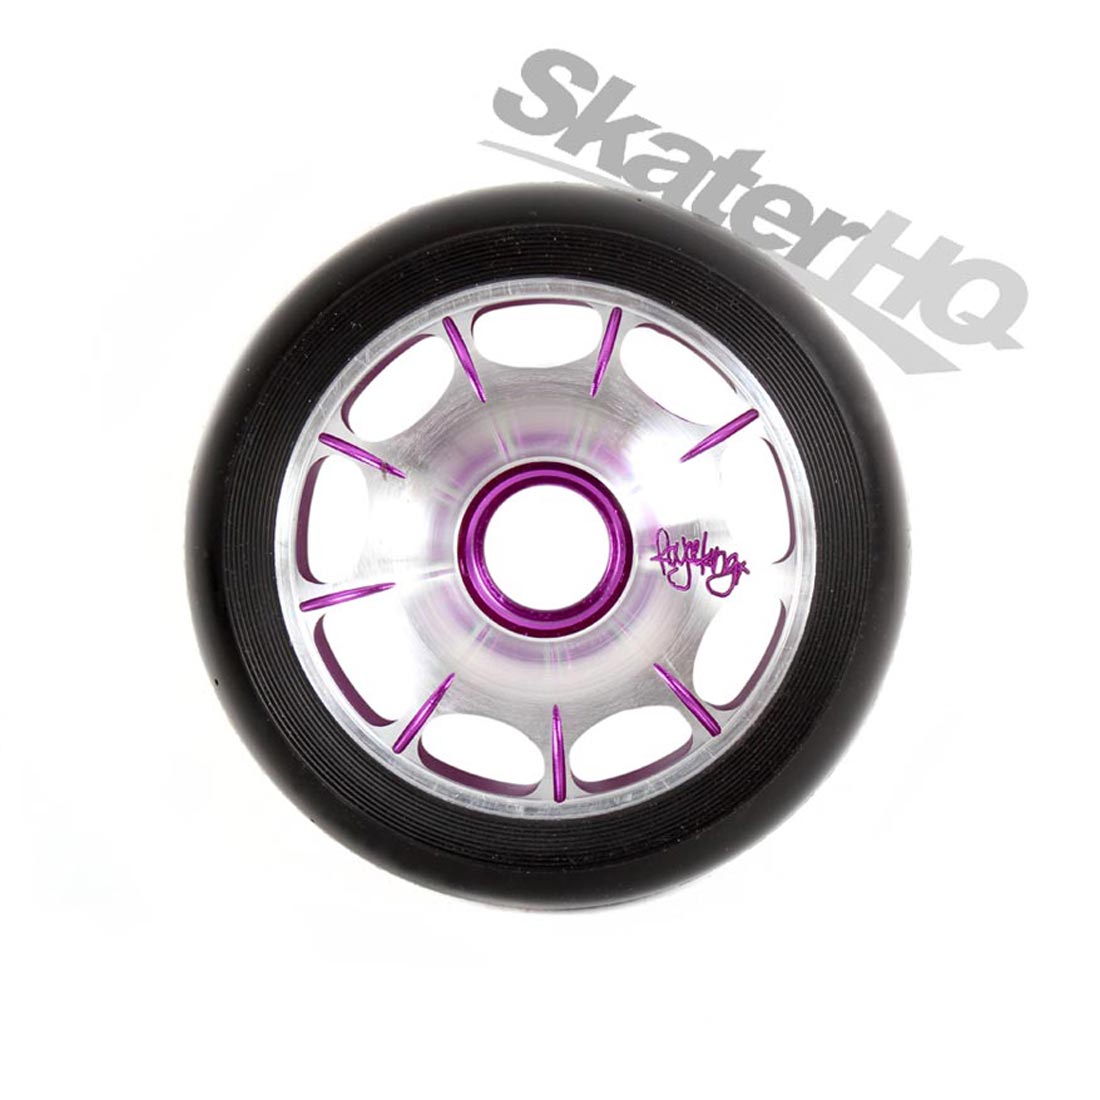 Root Industries Royce King Sig Wheel 110mm - Black/Purple Scooter Wheels